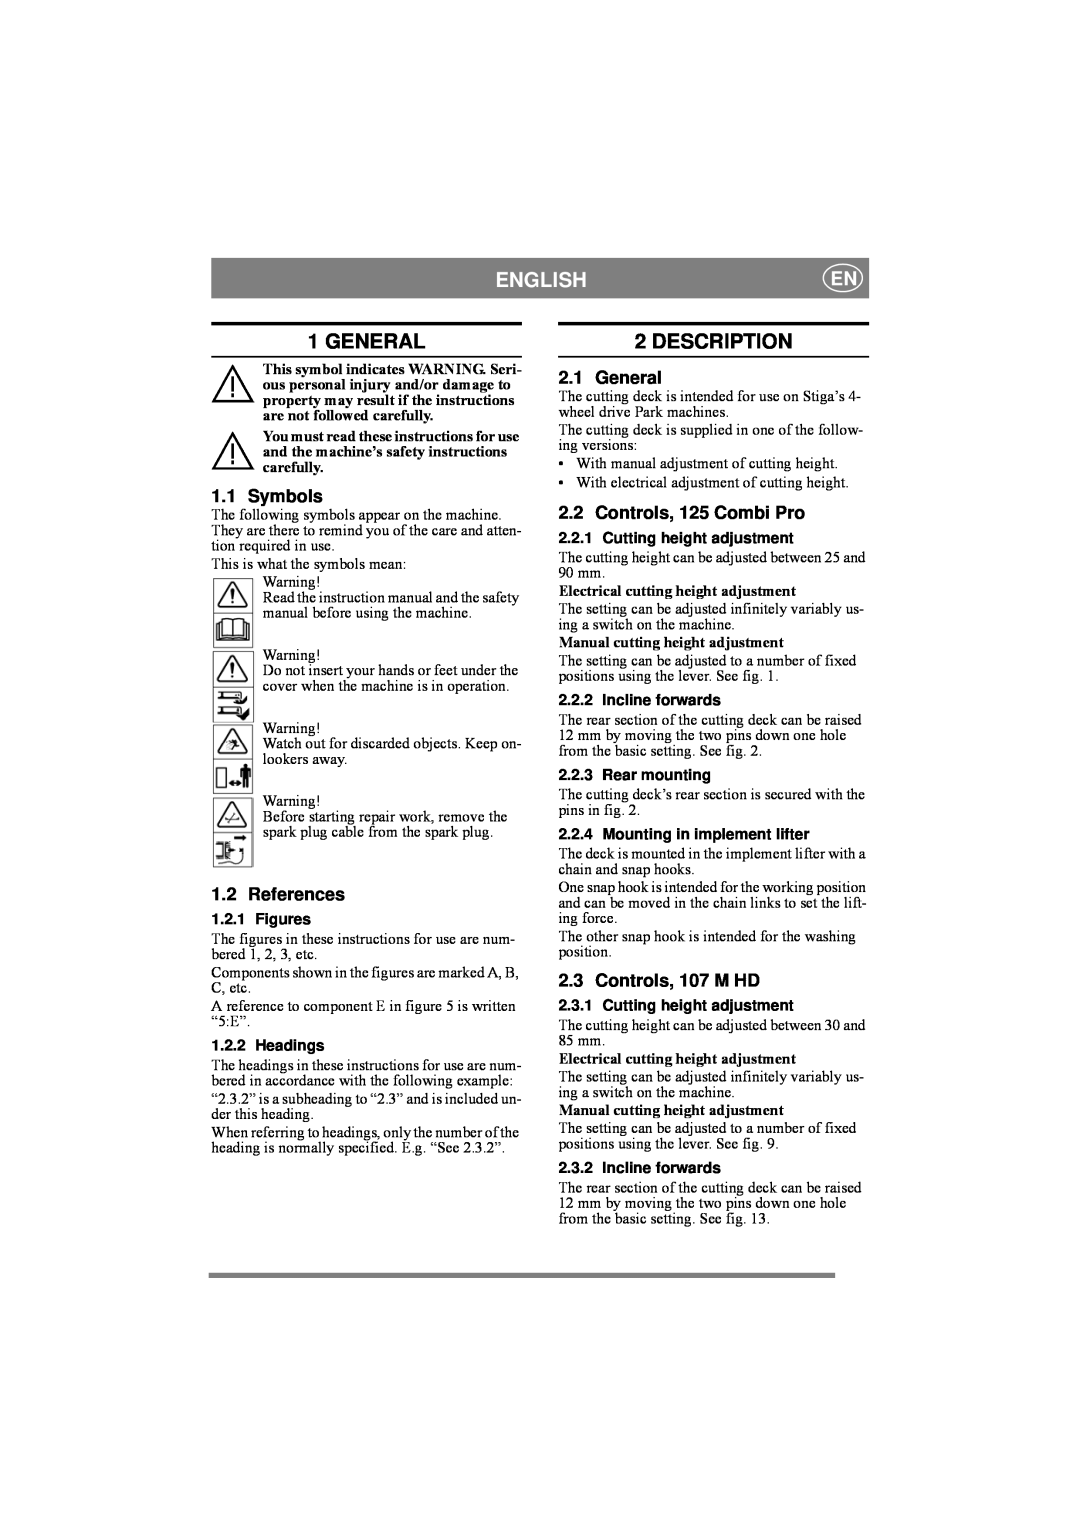 Stiga 8211-0543-01 manual English, General, Description, Symbols, References, Controls, 125 Combi Pro, Controls, 107 M HD 